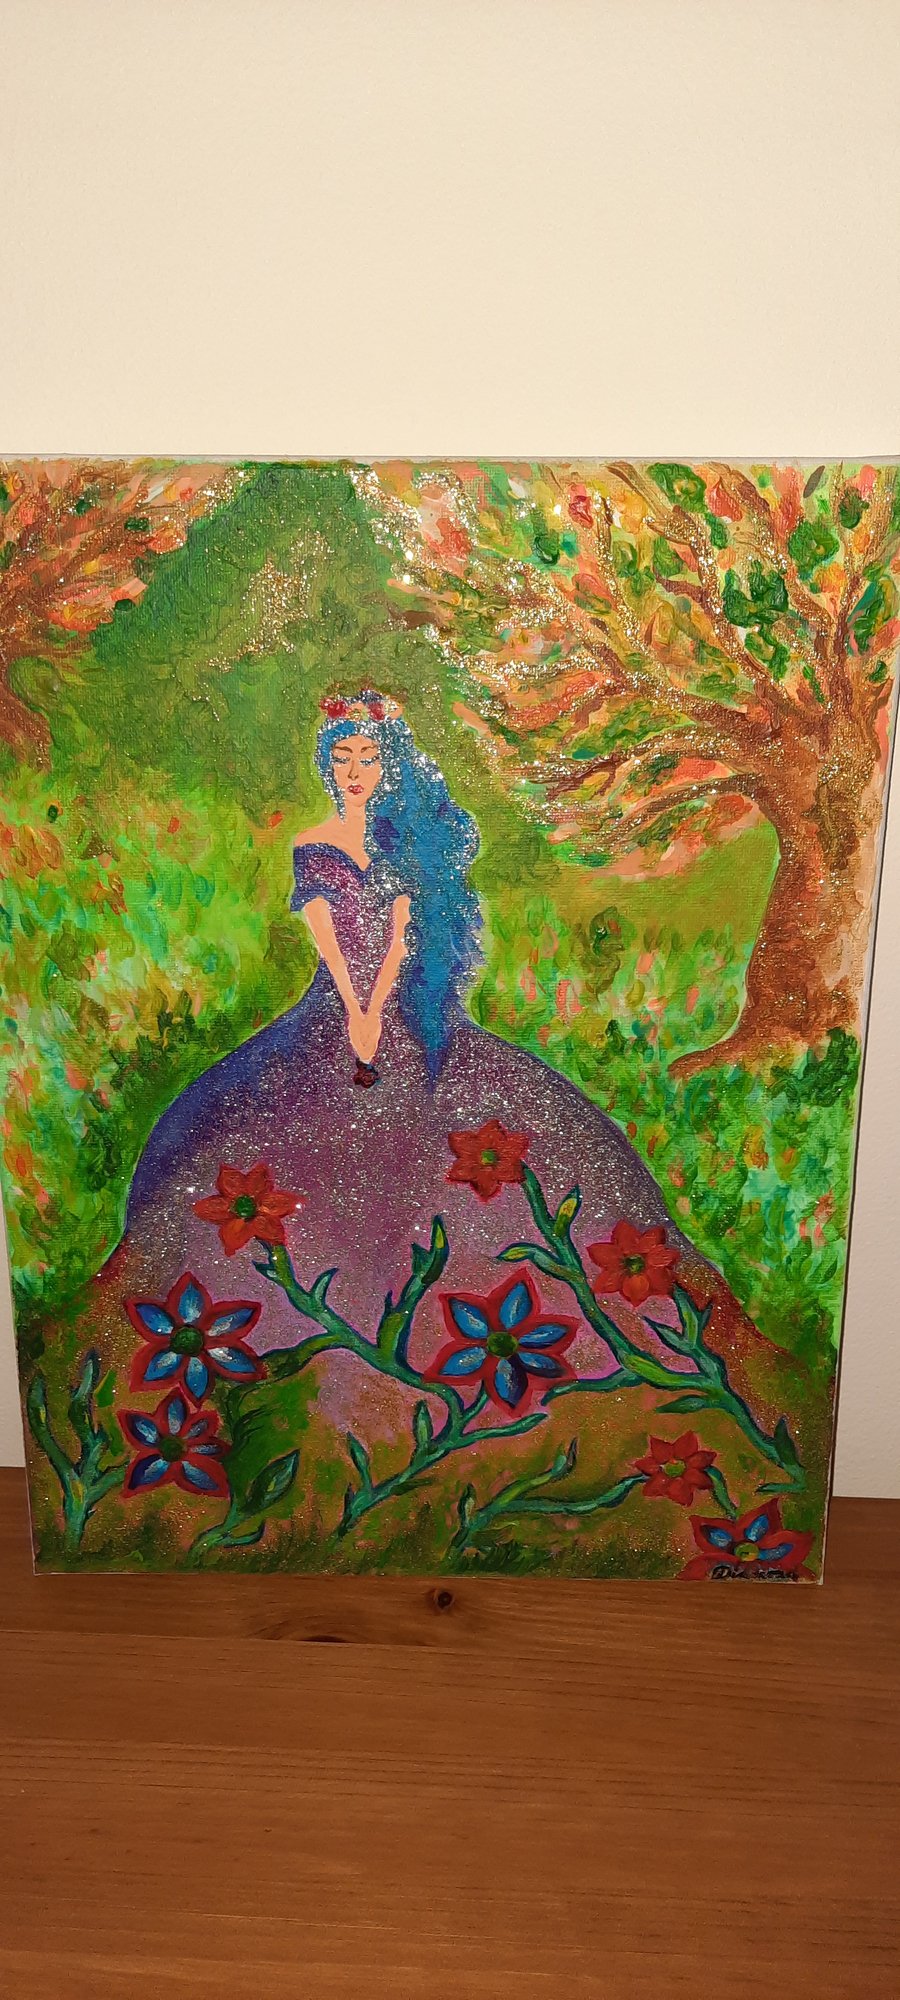 Fairy-original acrylic painting